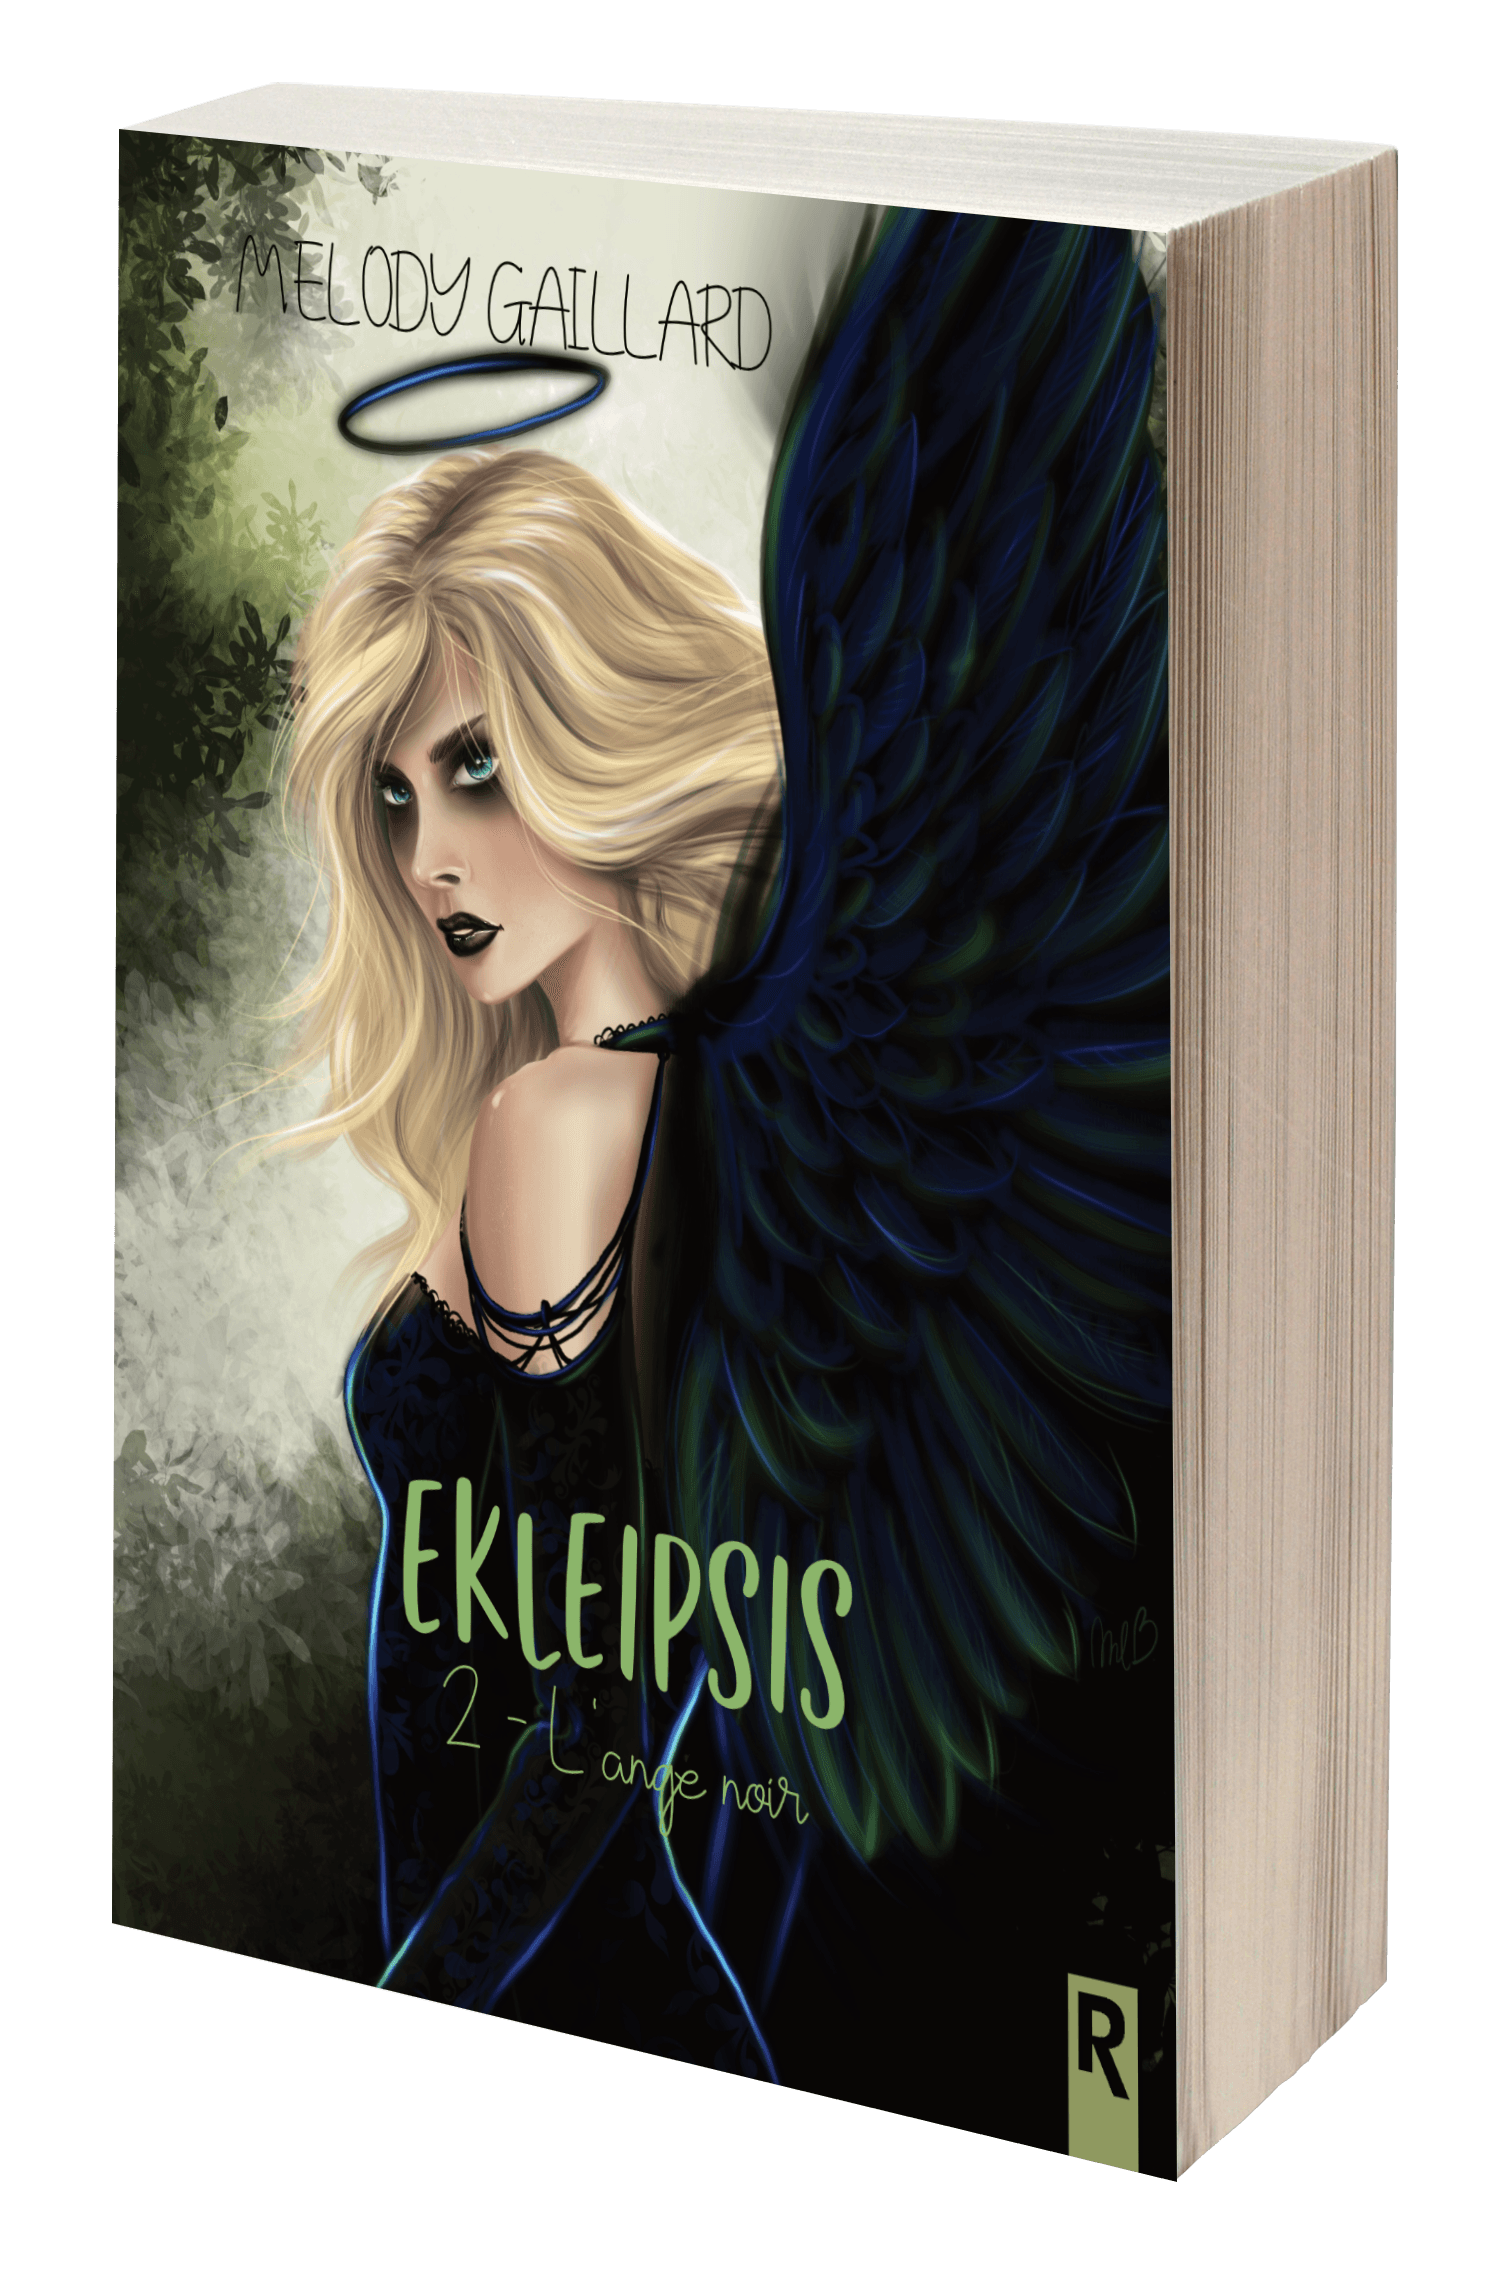 Ekleipsis de Melody Gaillard, une trilogie fantastique où vous découvrirez notre héroïne, sorcière, qui ira visiter Toulouse et découvrira une école de sorciers.